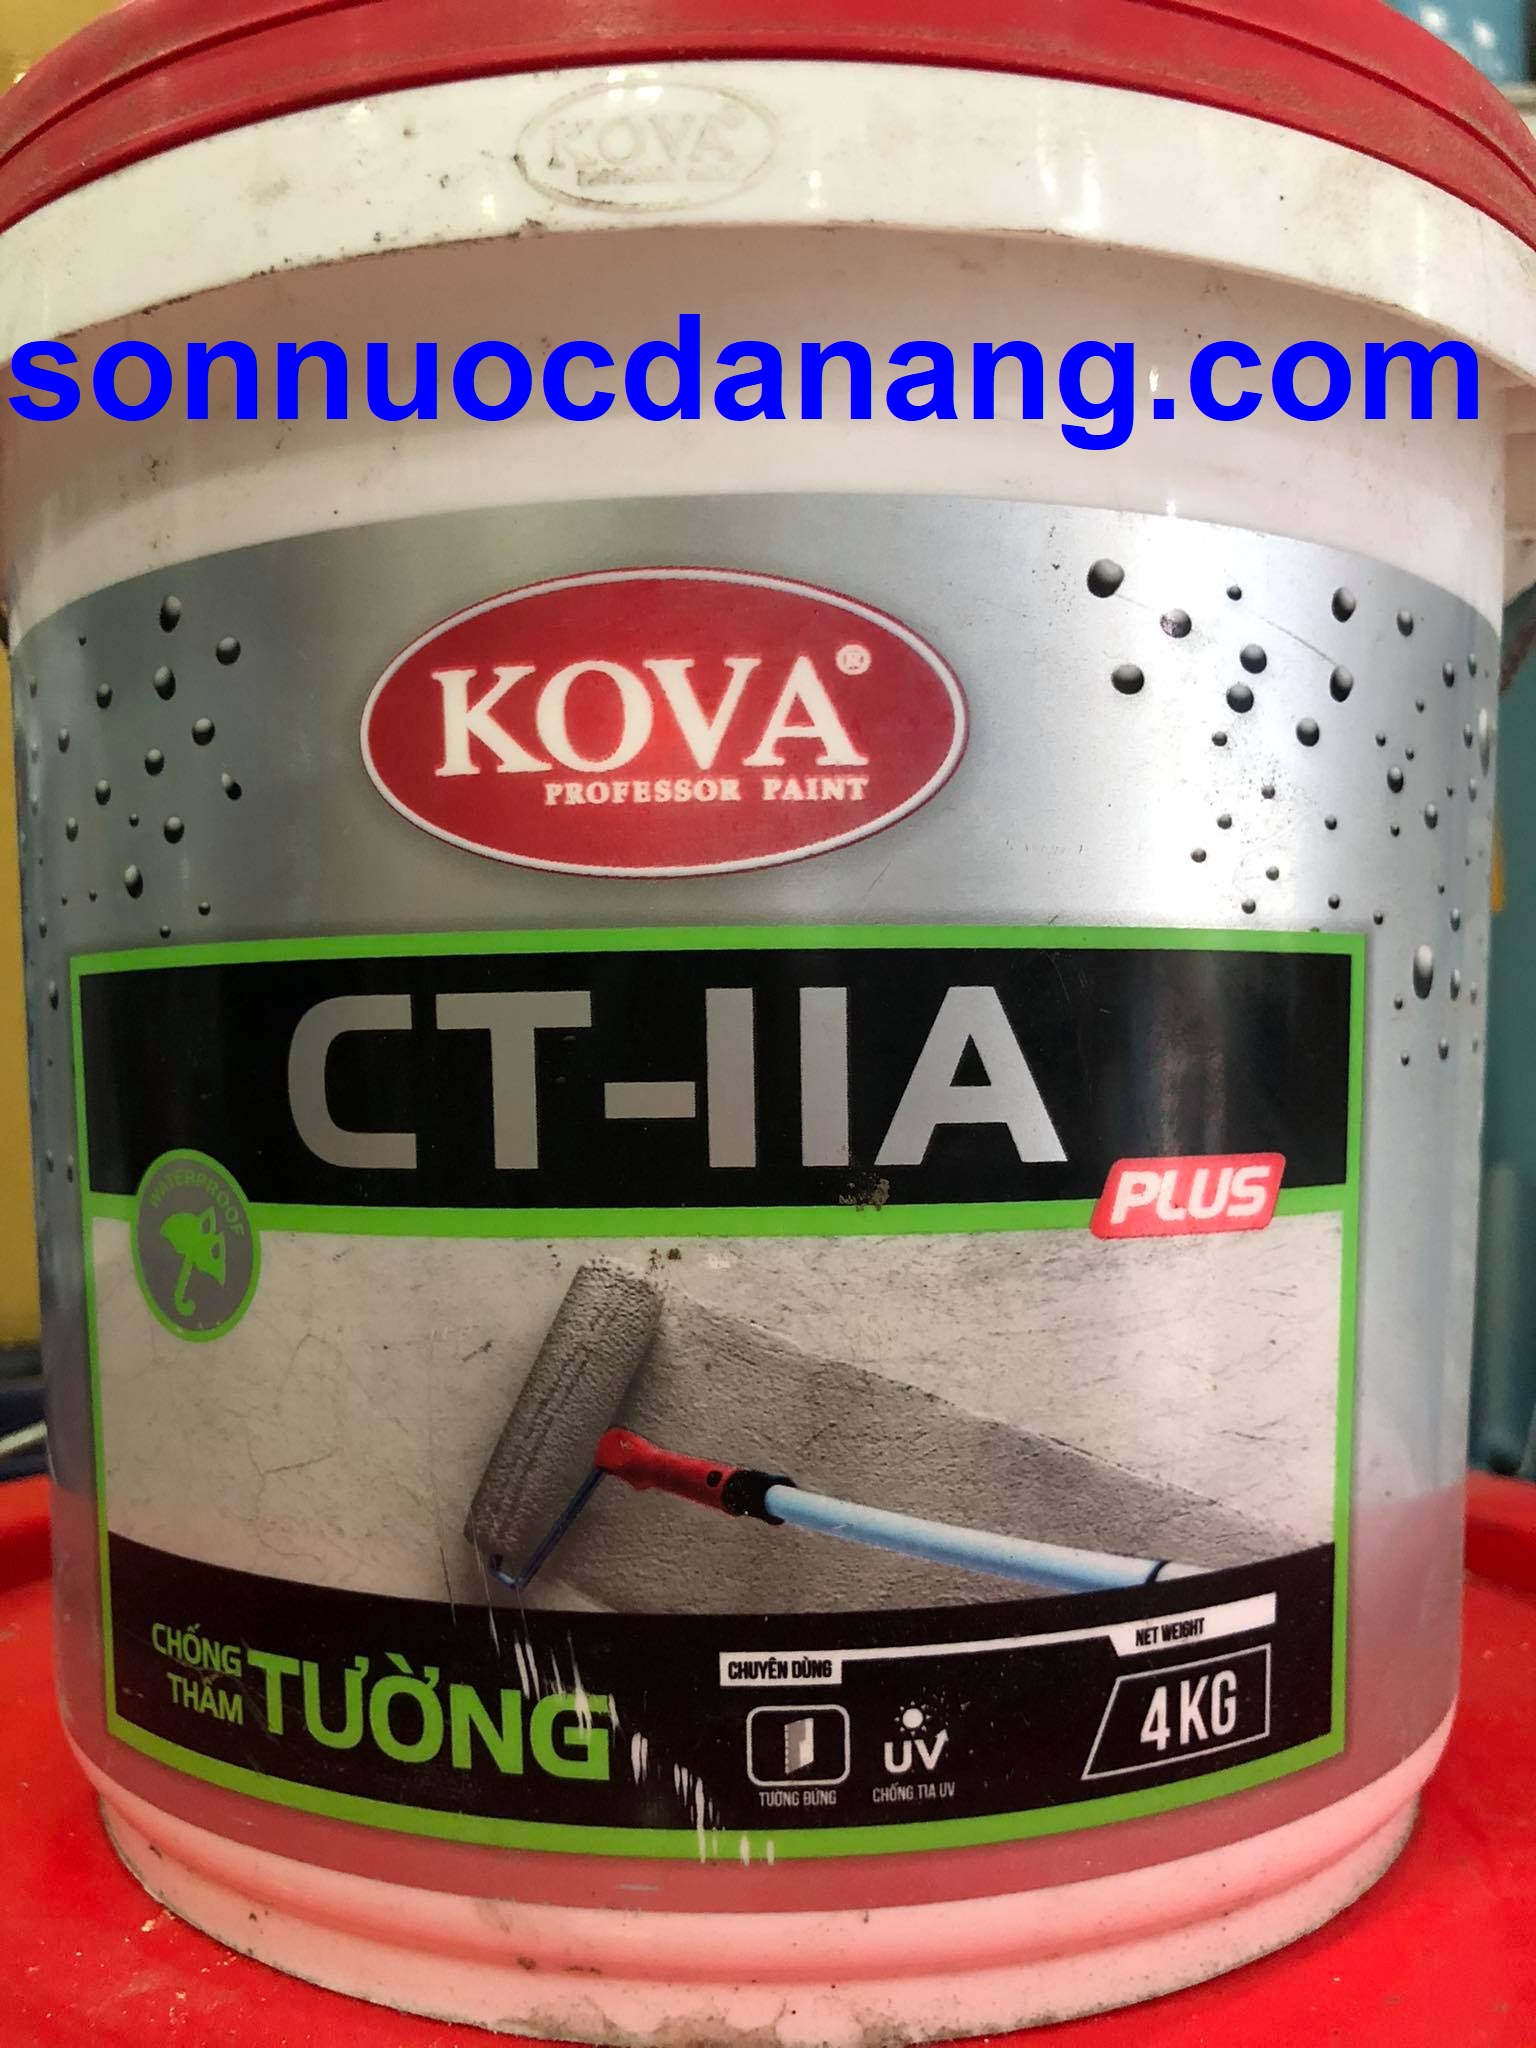 Sơn KOVA CT11A Plus là sự lựa chọn hoàn hảo cho những công trình cần độ bền cao và tính chống thấm tuyệt đối. Với công thức đặc biệt, sản phẩm này giúp bảo vệ tối đa cho các bề mặt xây dựng khỏi sự ảnh hưởng của môi trường.